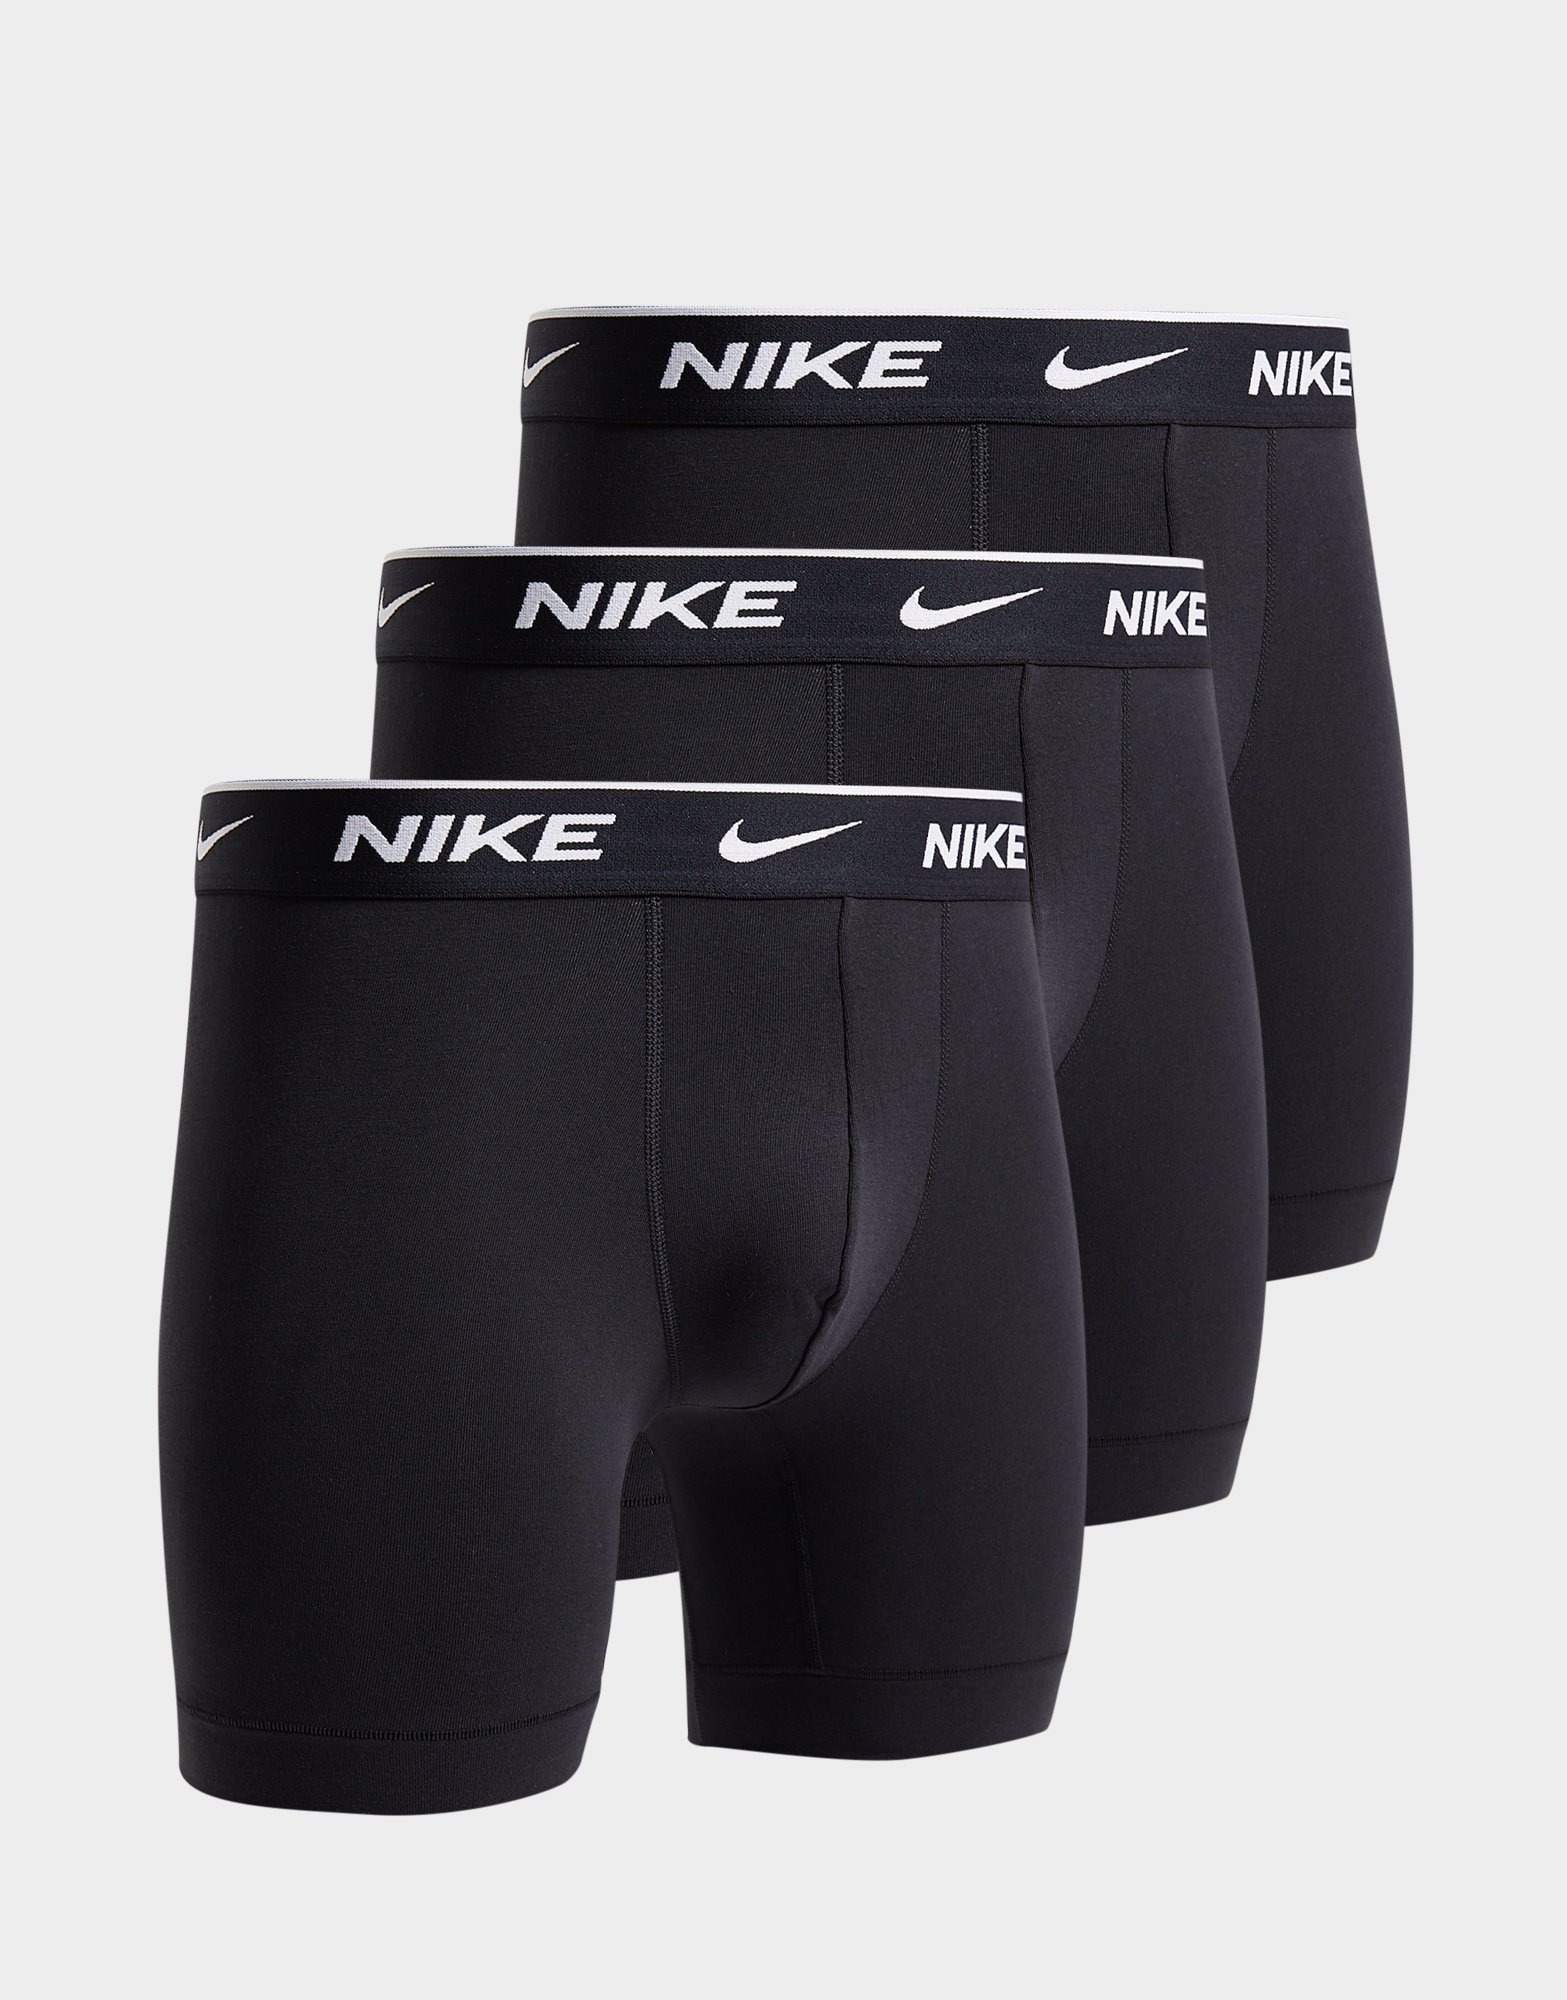 Nike pack de 3 calzoncillos en JD España